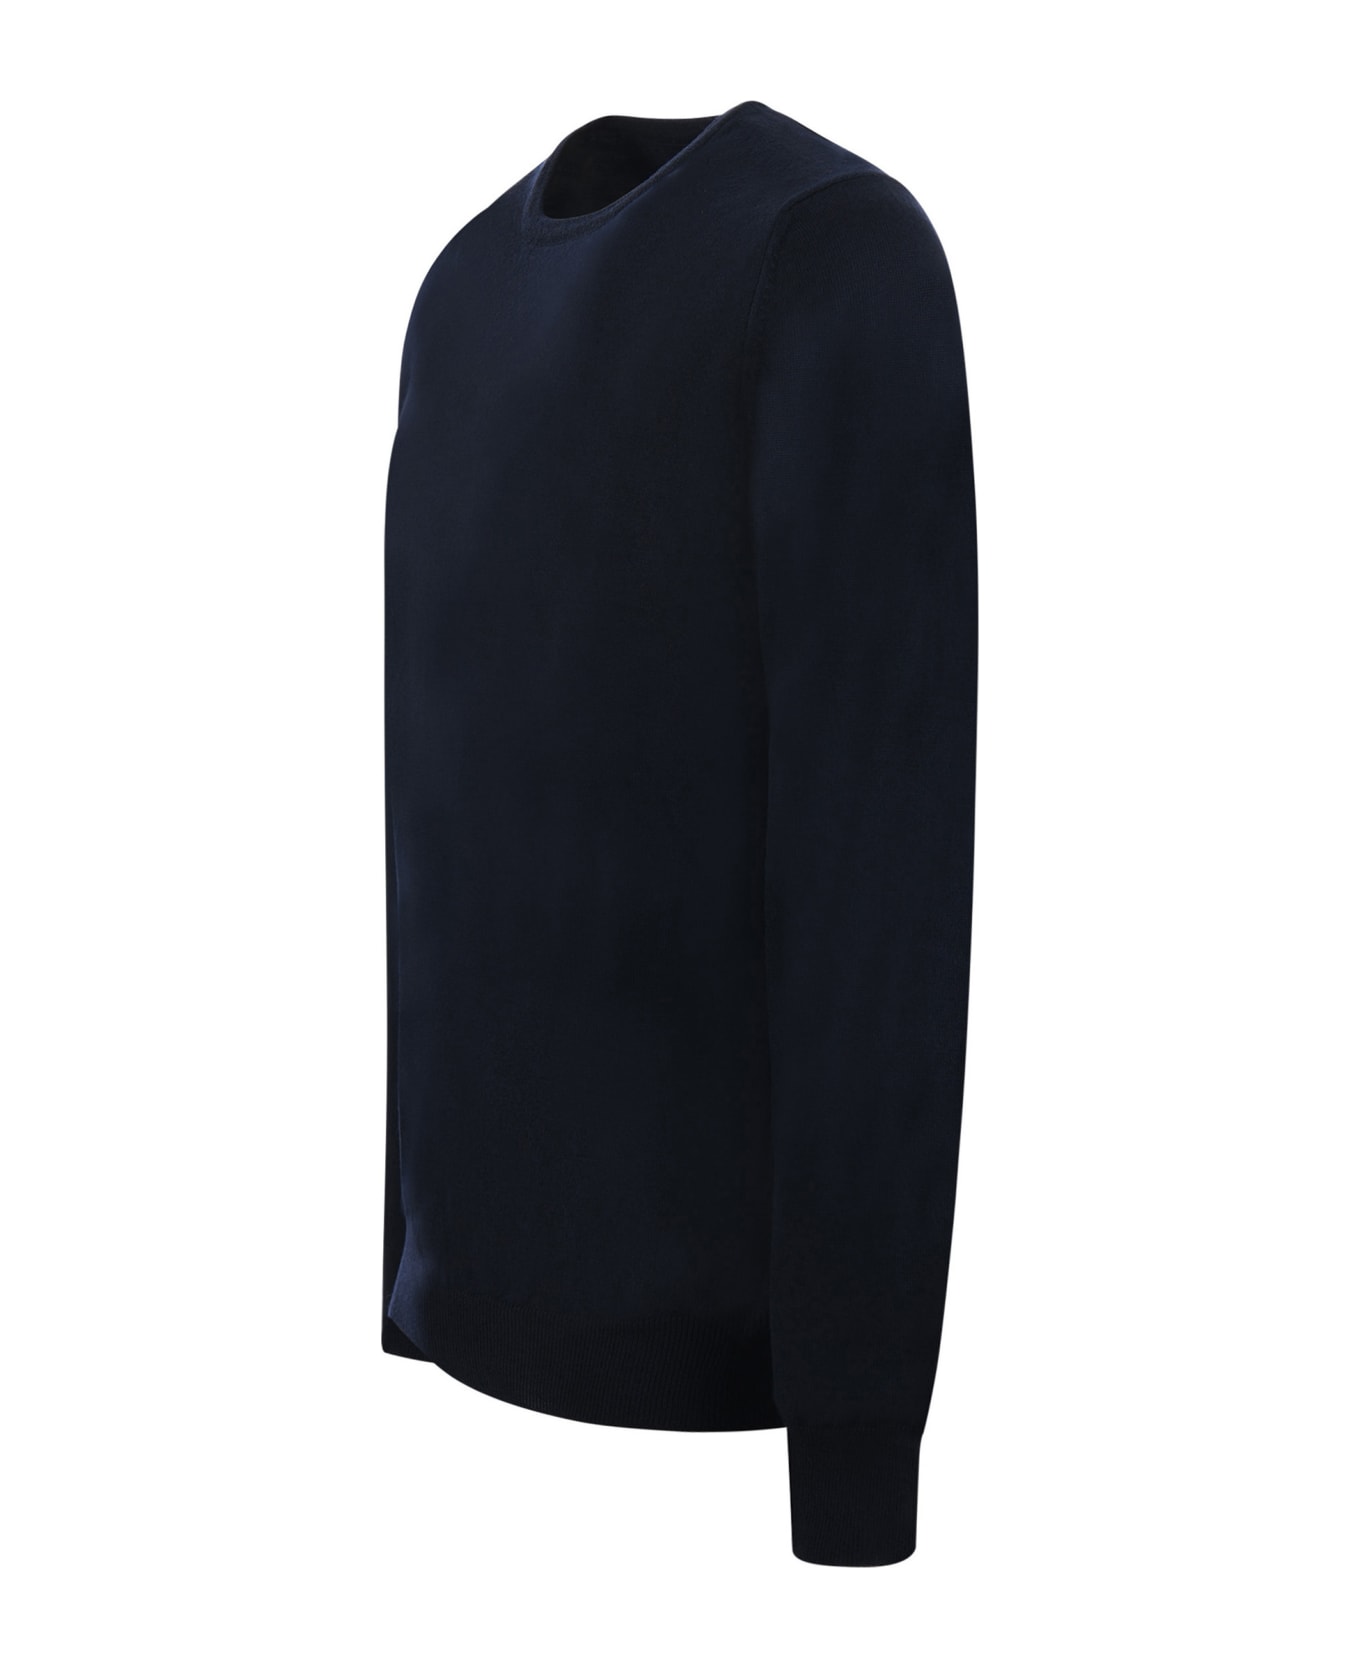 Tagliatore Round Neck Sweater - Blu scuro ニットウェア